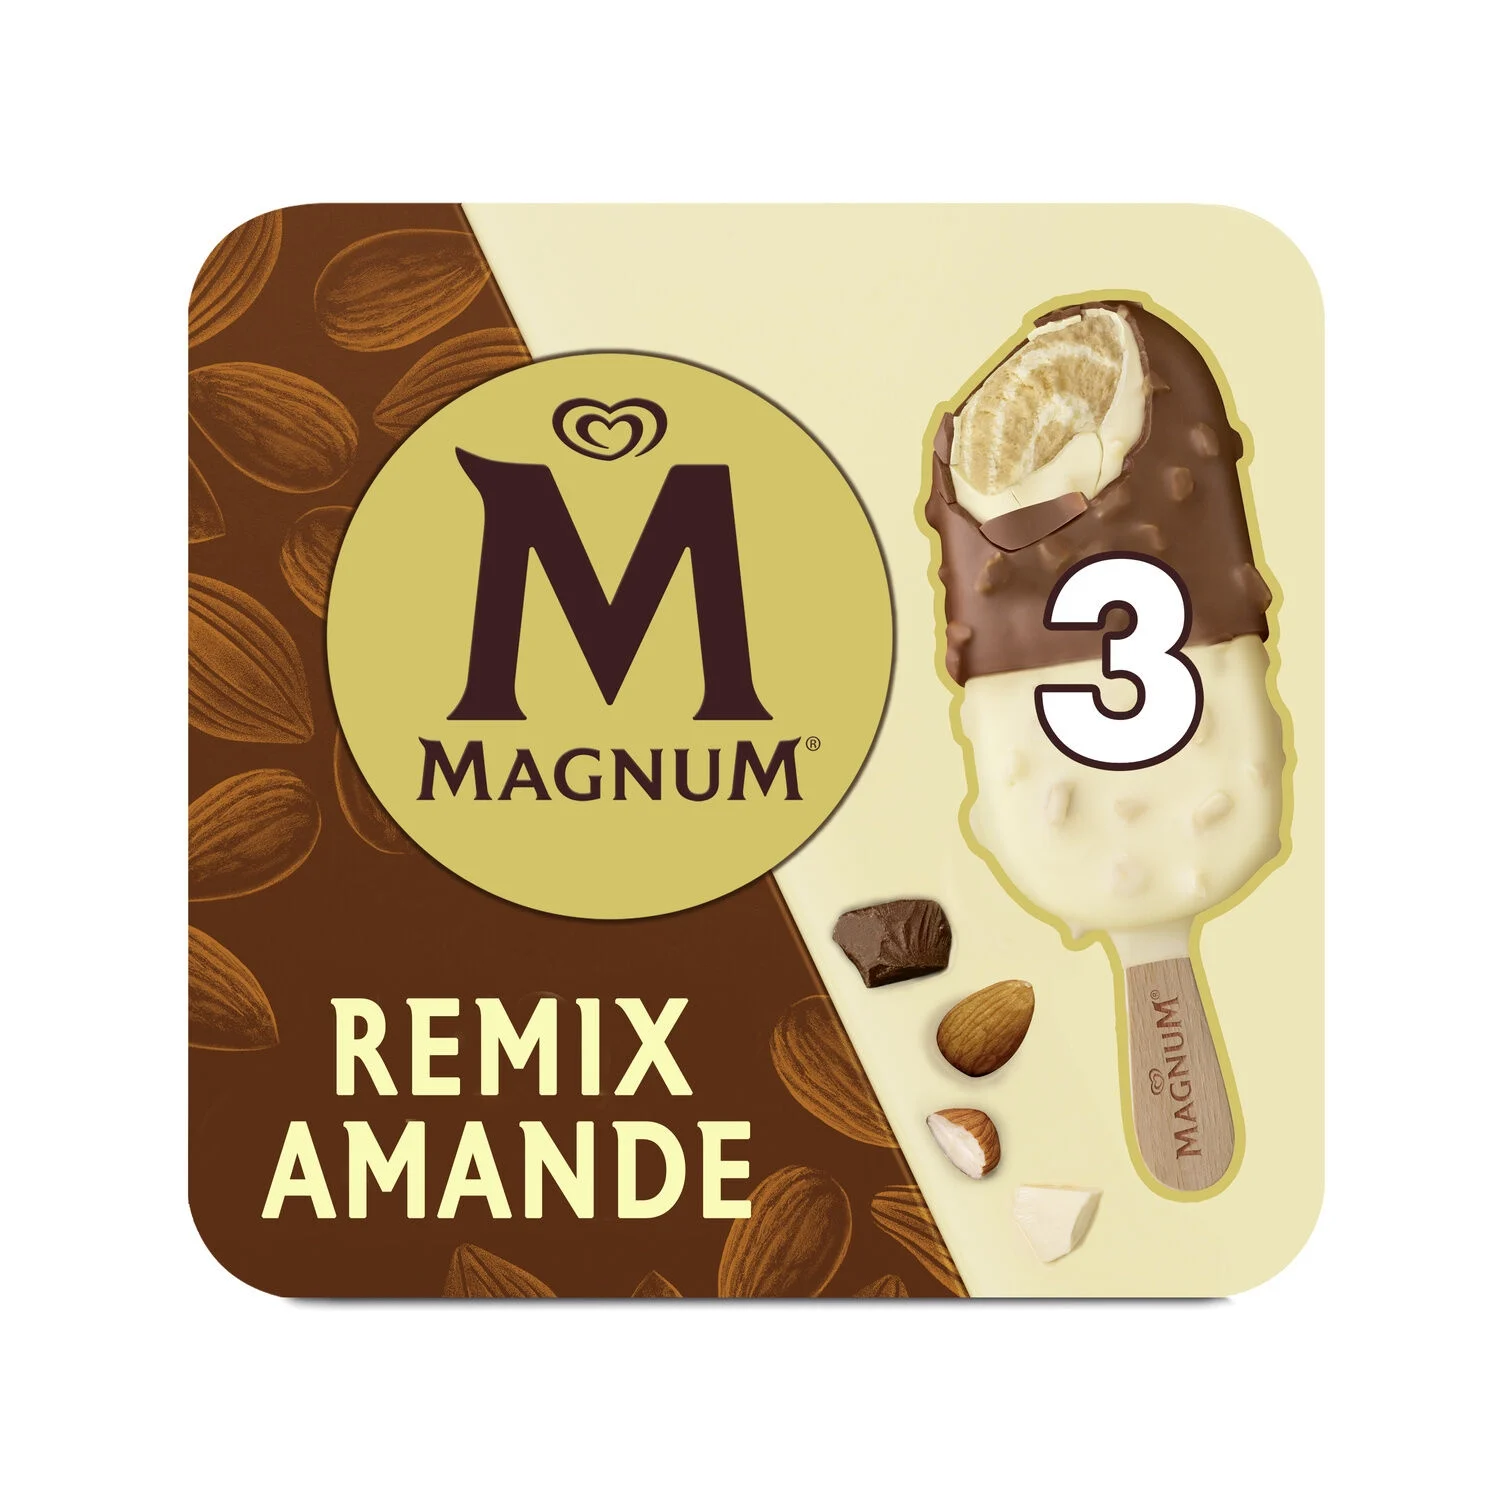 198g Magnum X3 Remix Amande